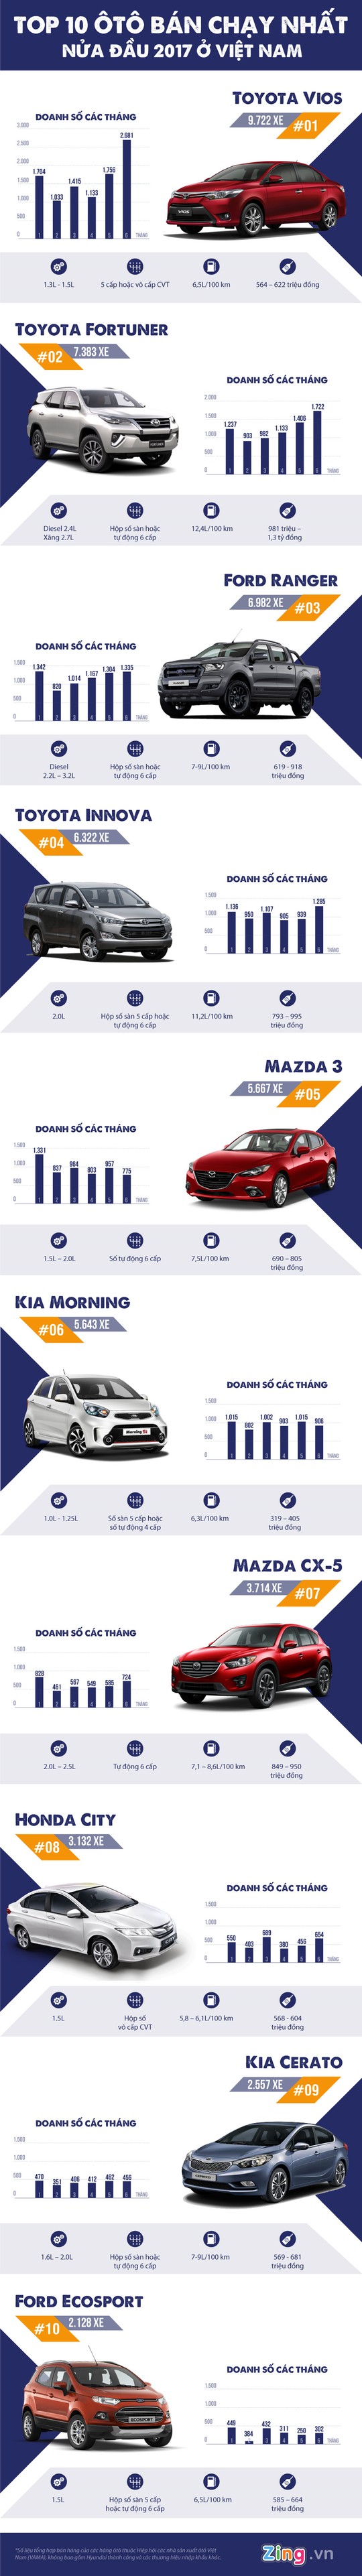 10 ô tô bán chạy nhất nửa đầu 2017 ở Việt Nam - Ảnh 1.